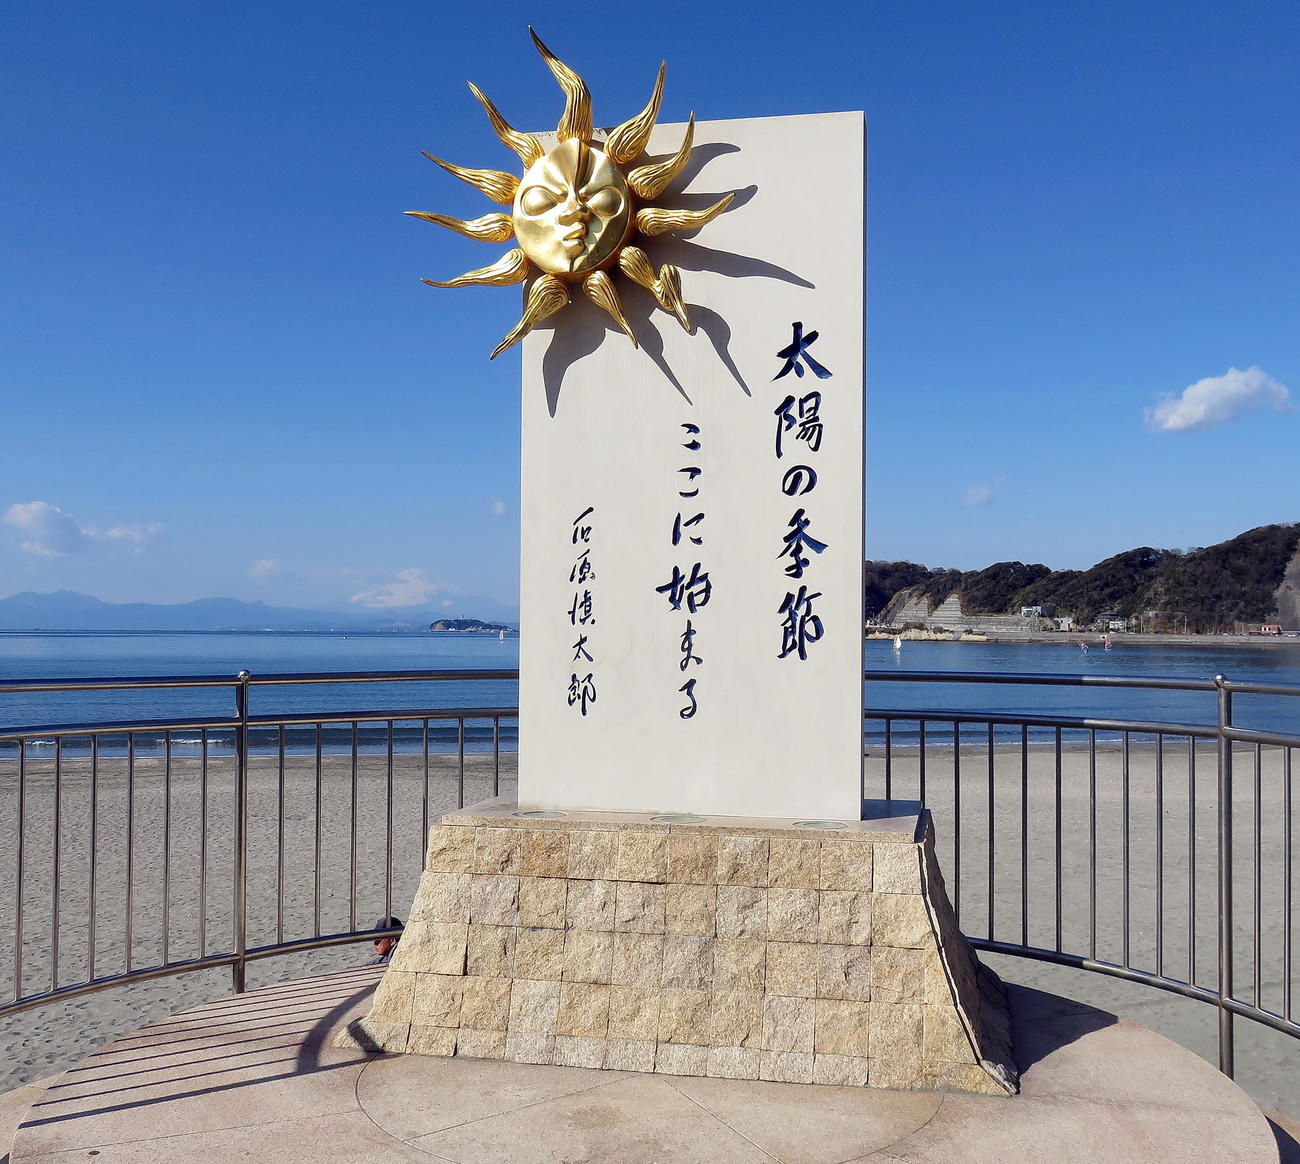 逗子海岸に建てられている芥川賞小説「太陽の季節」記念碑。海ではヨットが行われ、後方には富士山も望む（撮影・鎌田直秀）